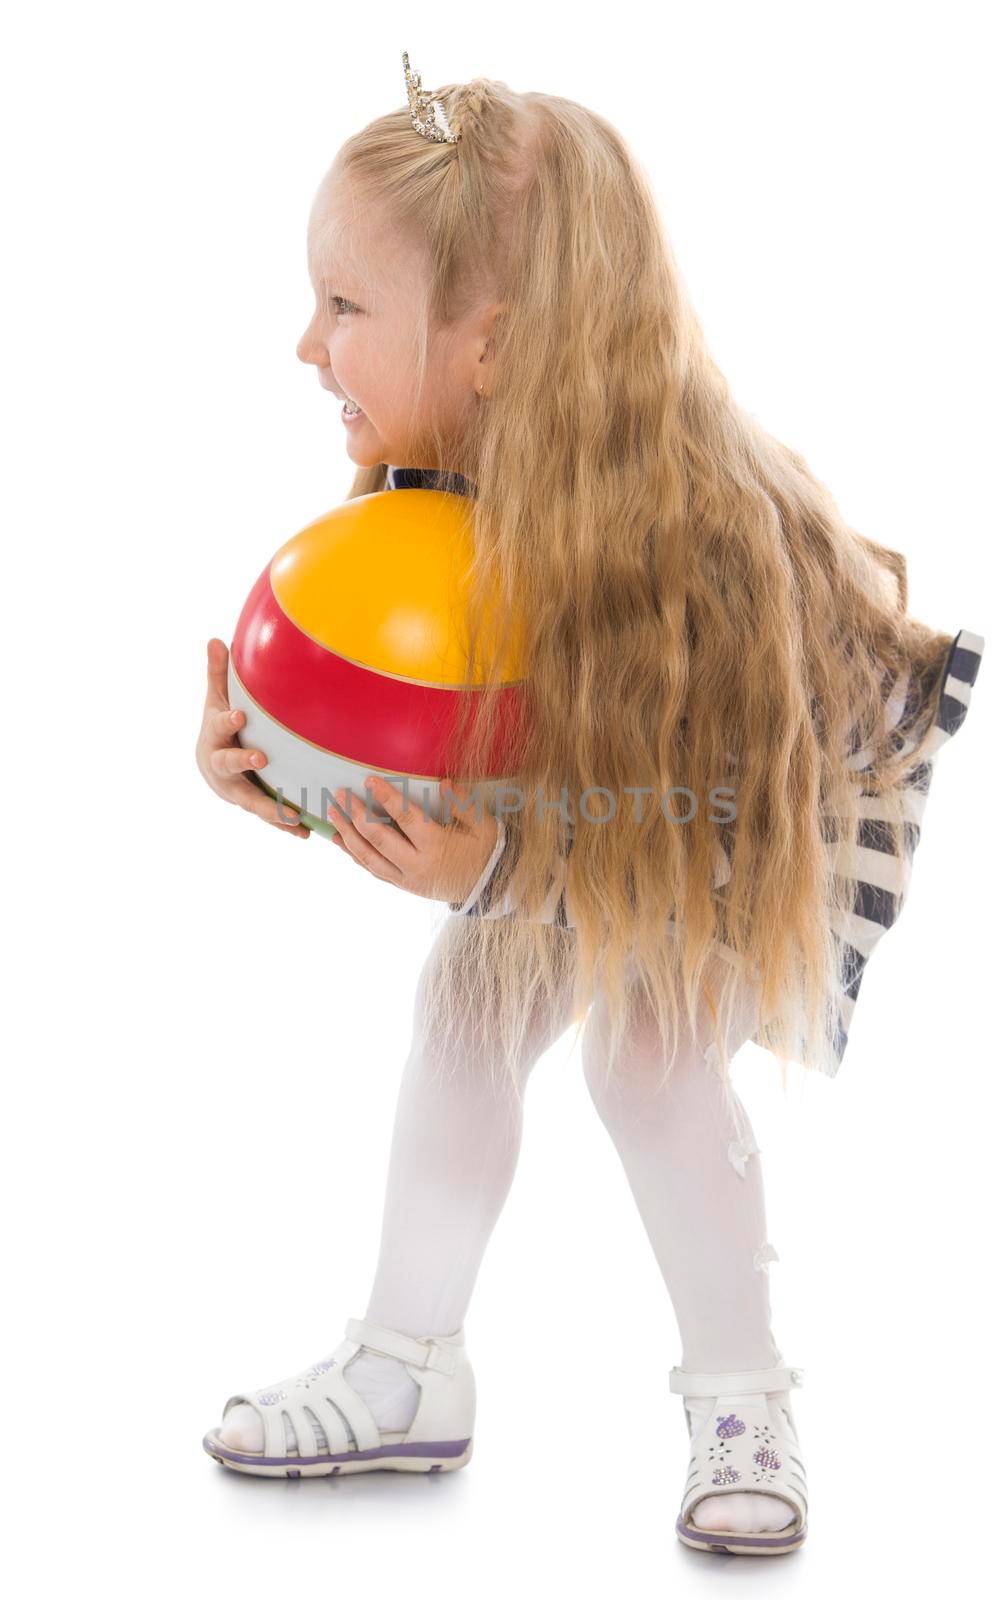 Girl with a ball by kolesnikov_studio